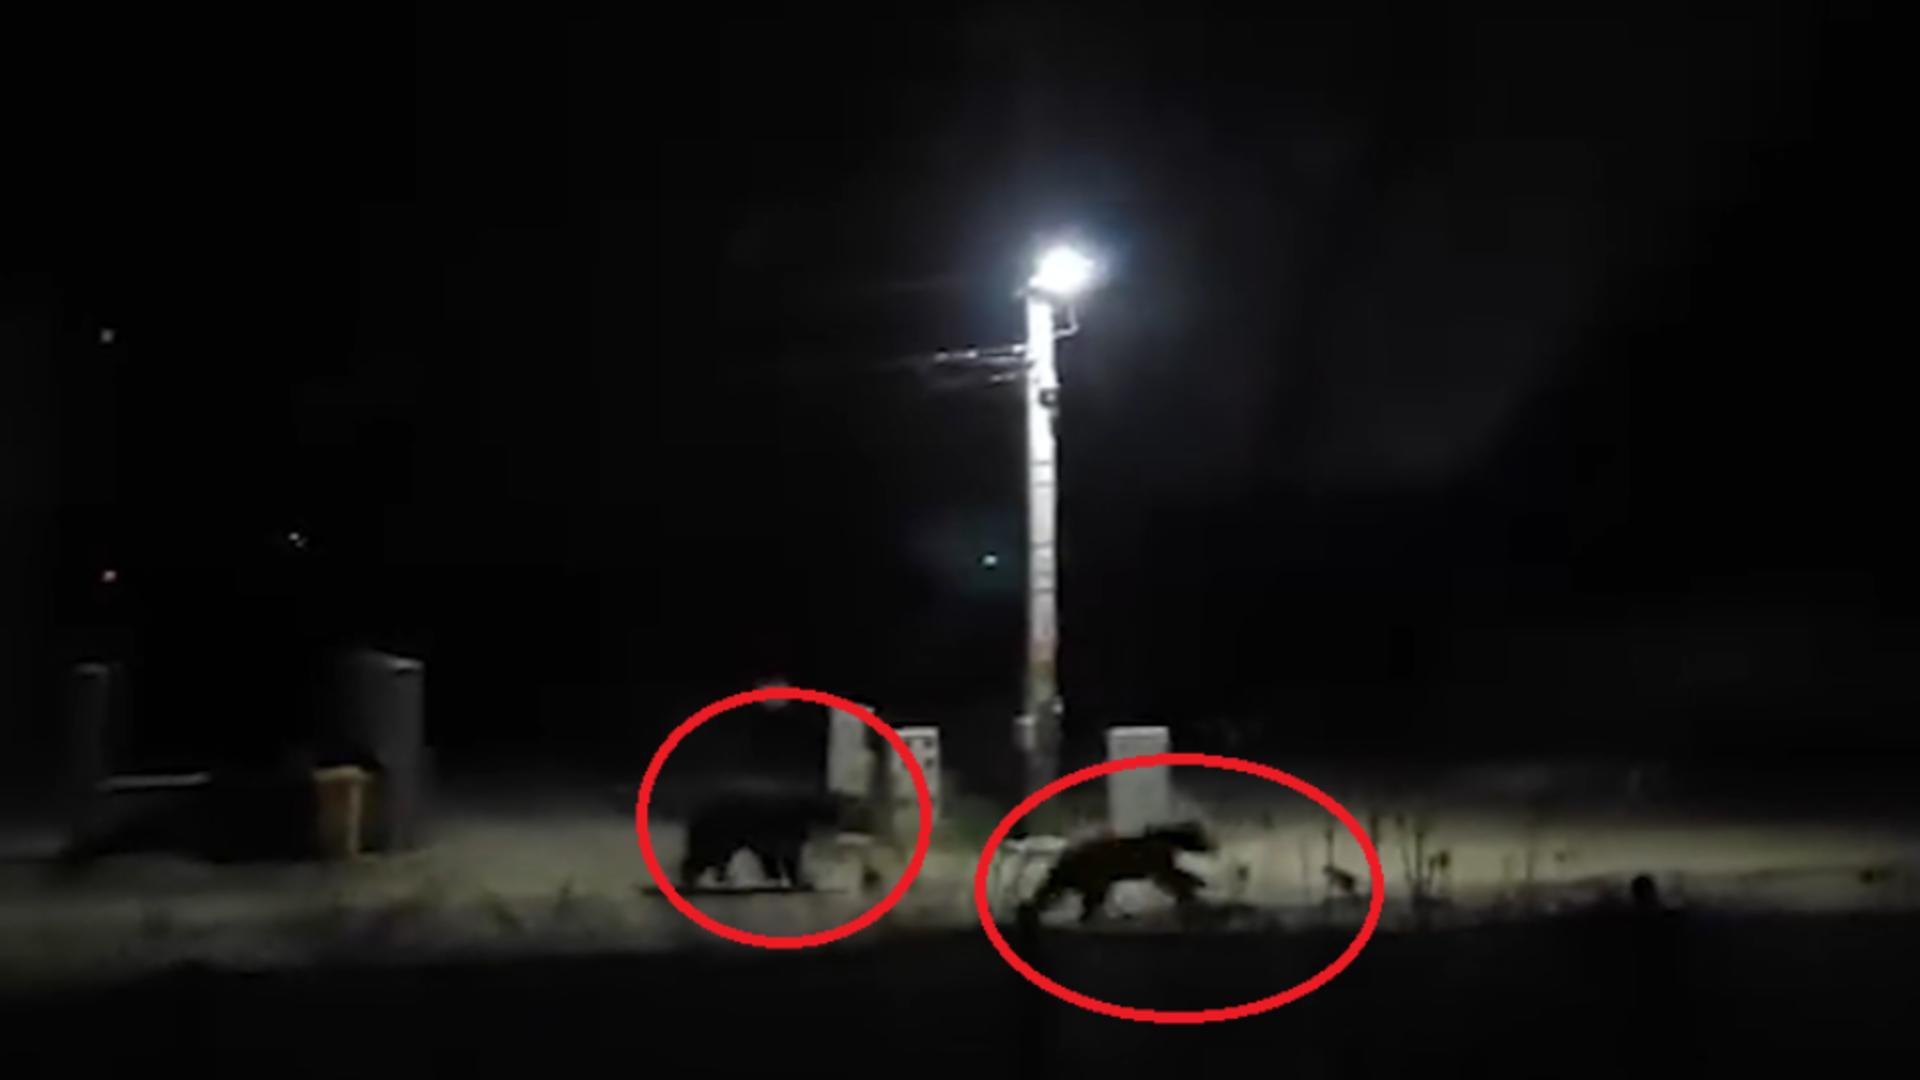 Doi urși, filmați plimbându-se liniștiți pe străzile din Mureș. Localnicii au alertat autoritățile VIDEO /Captură video